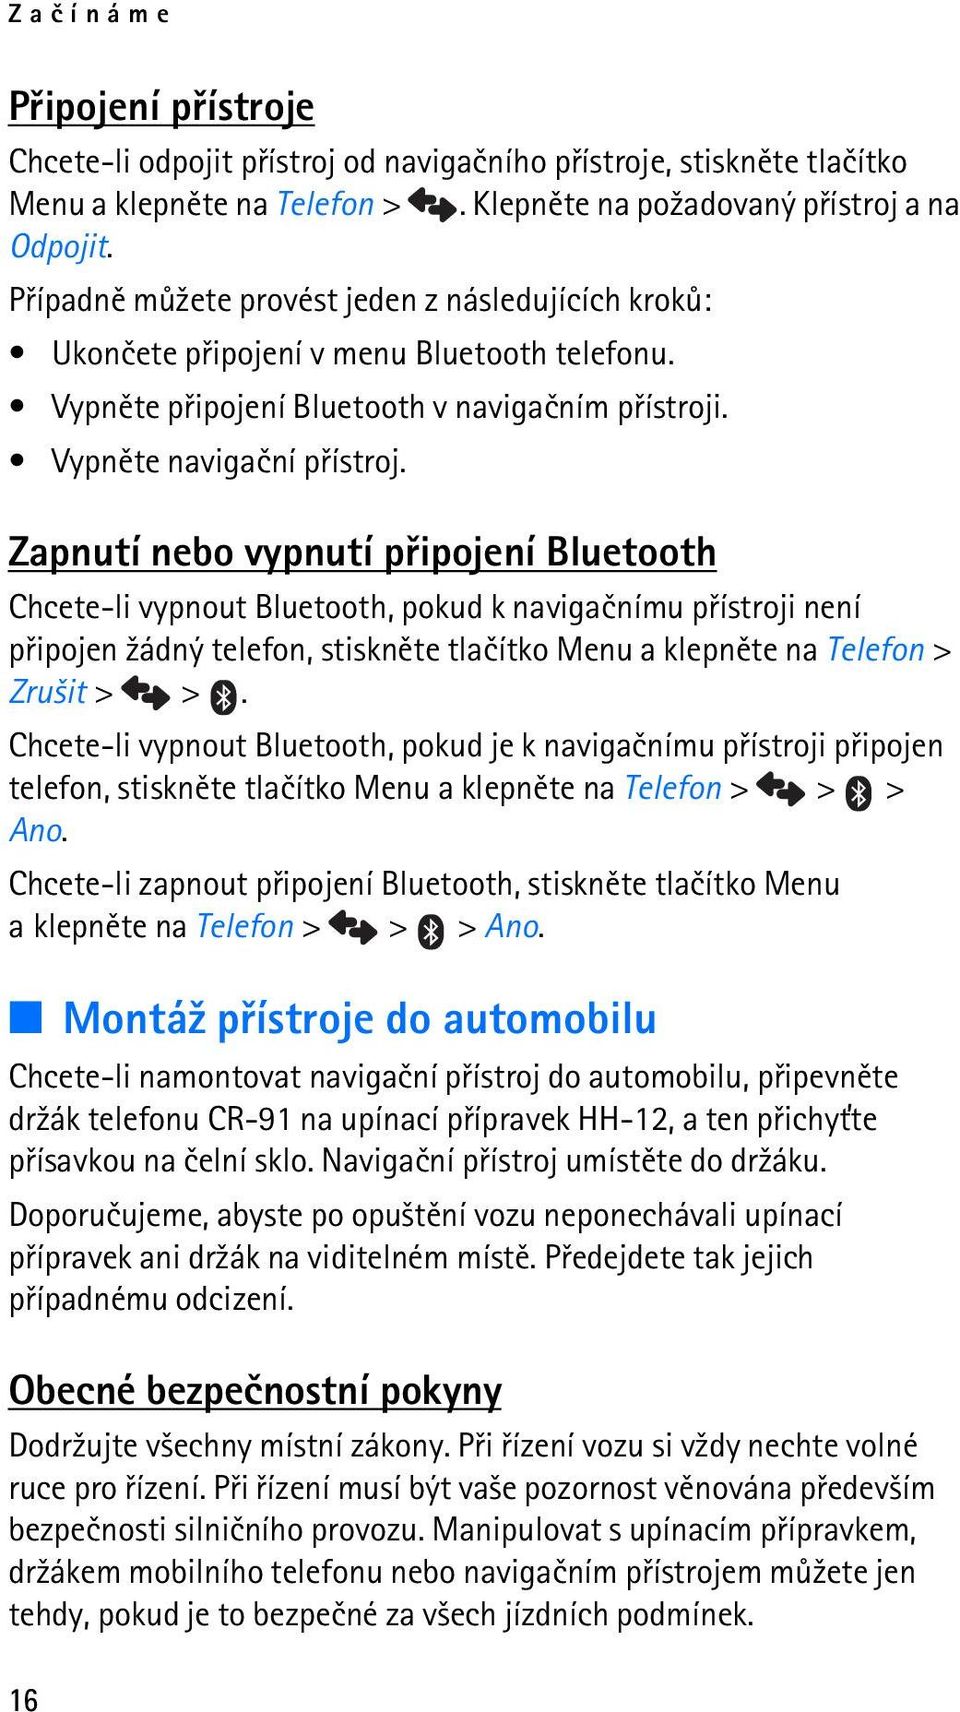 Zapnutí nebo vypnutí pøipojení Bluetooth Chcete-li vypnout Bluetooth, pokud k navigaènímu pøístroji není pøipojen ¾ádný telefon, stisknìte tlaèítko Menu a klepnìte na Telefon > Zru¹it > >.